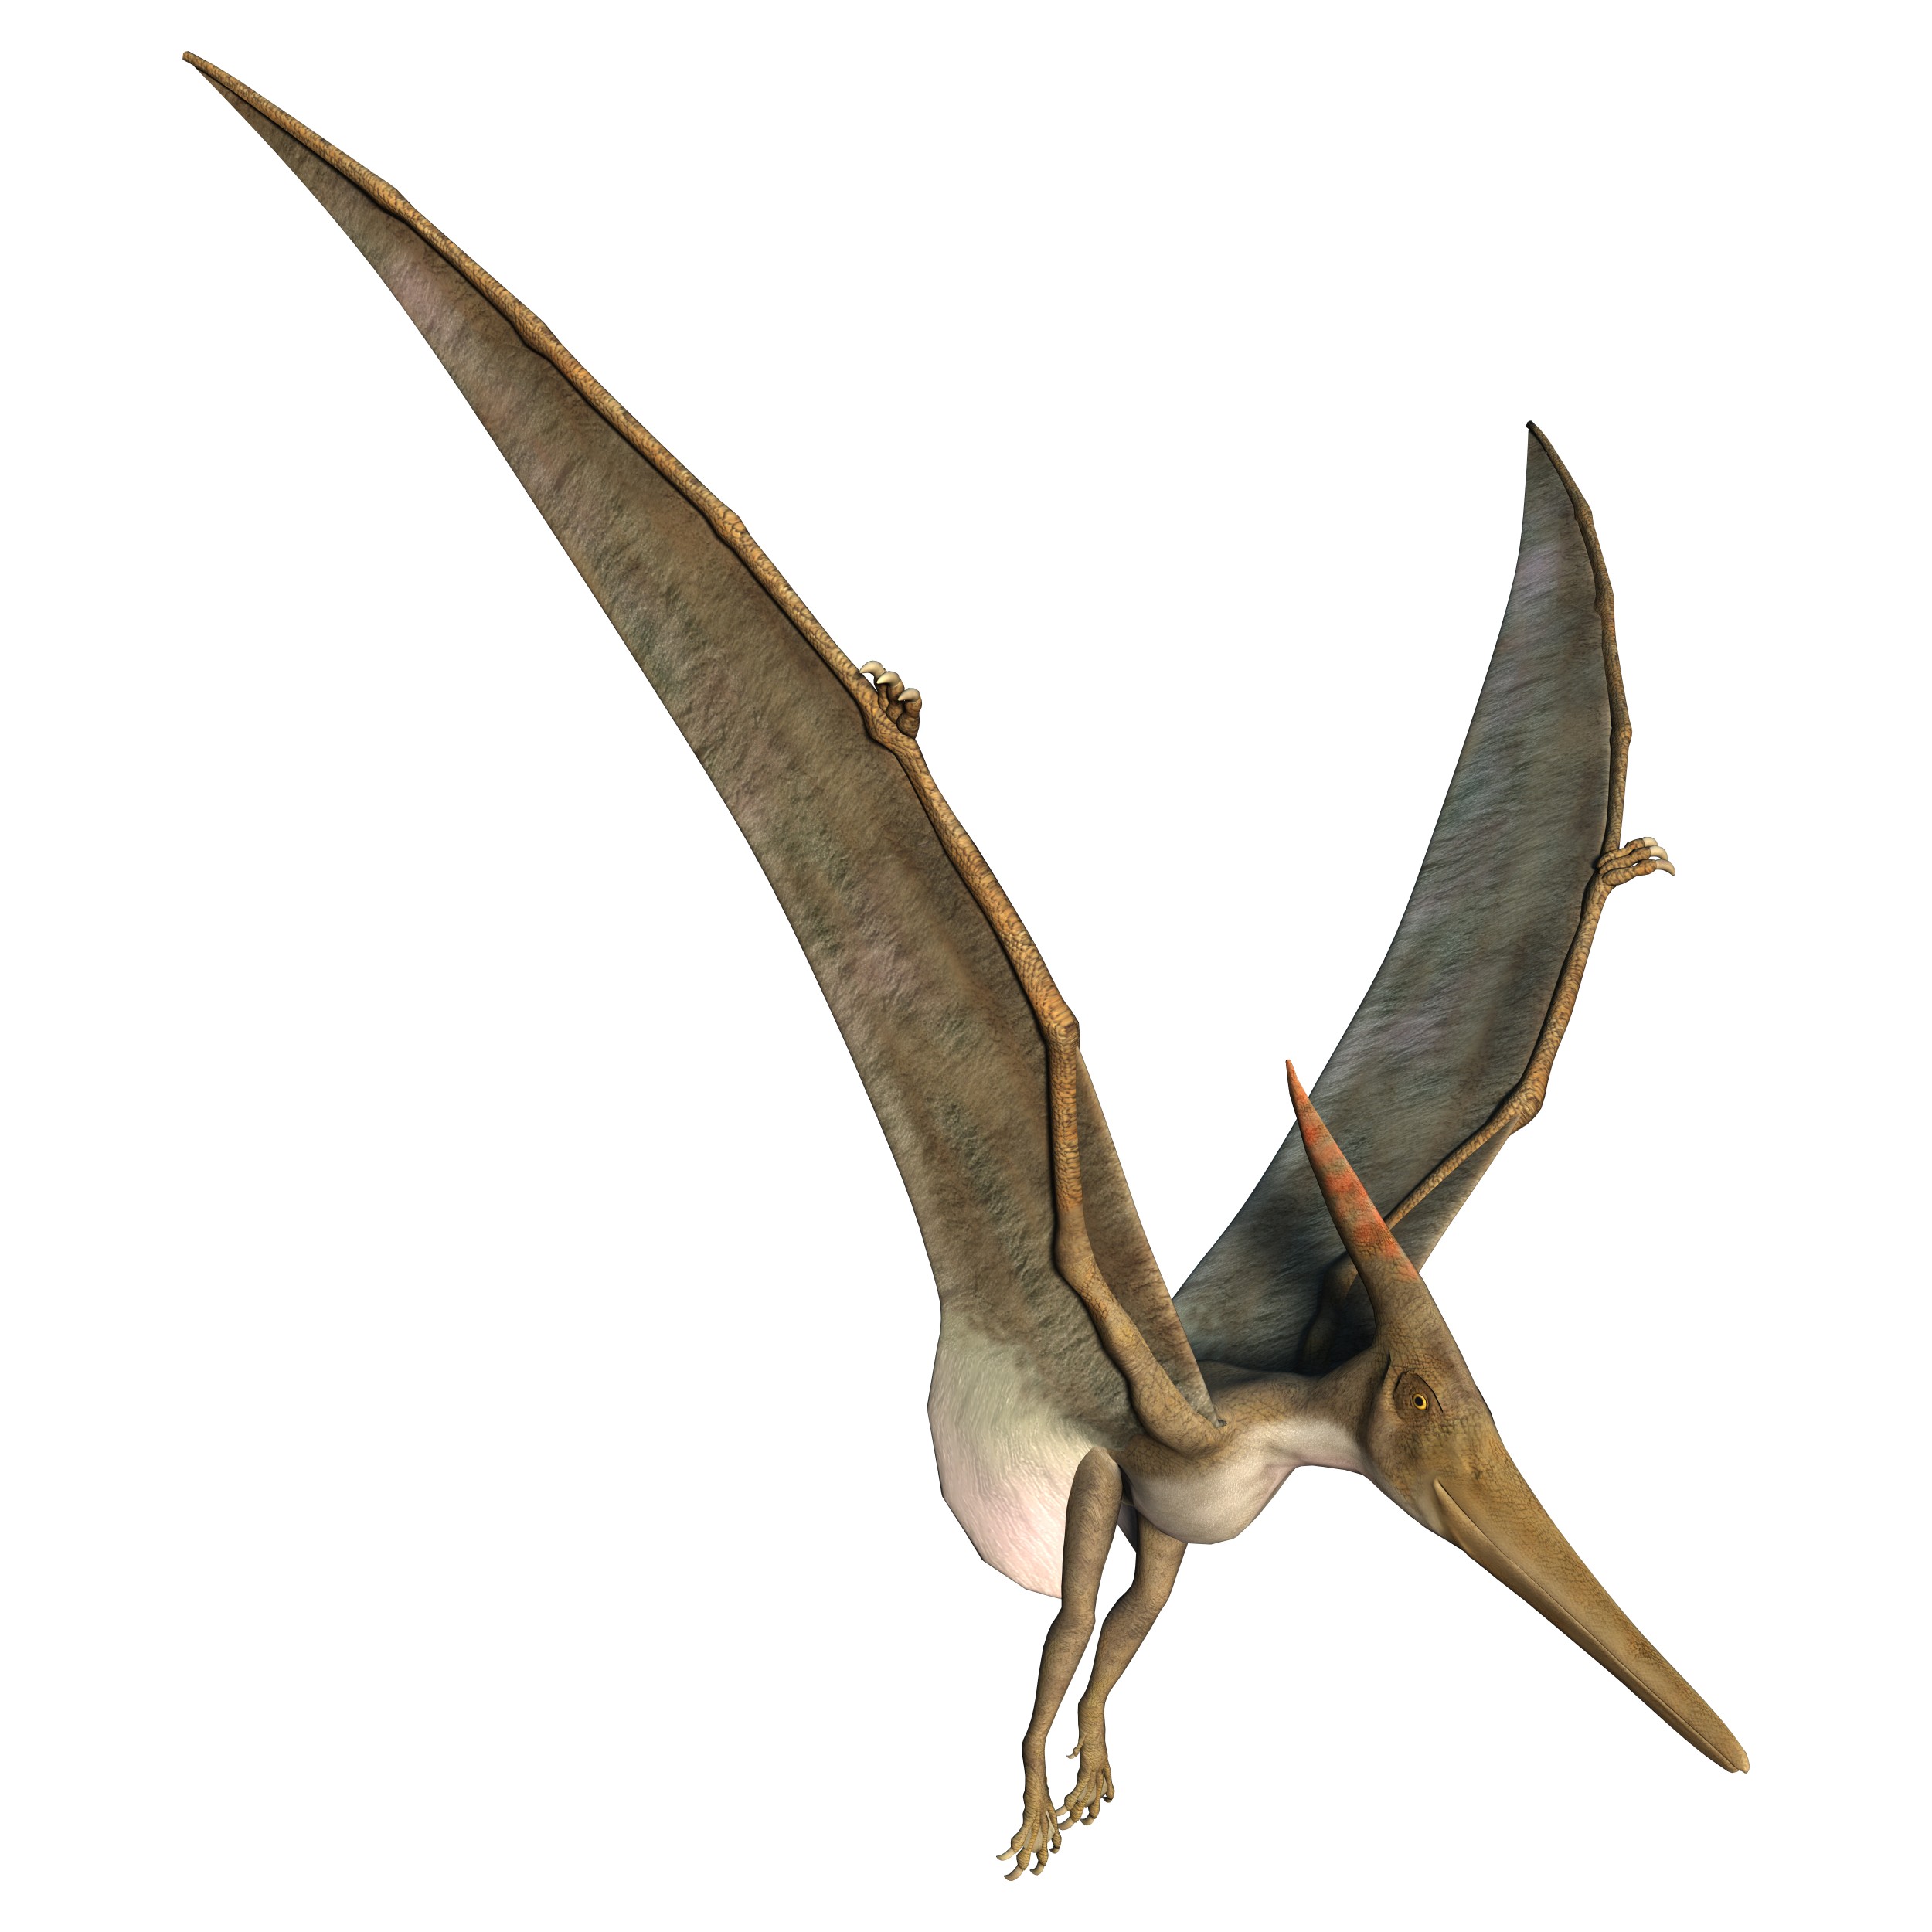 Pterodáctilo - Pterossauros - InfoEscola